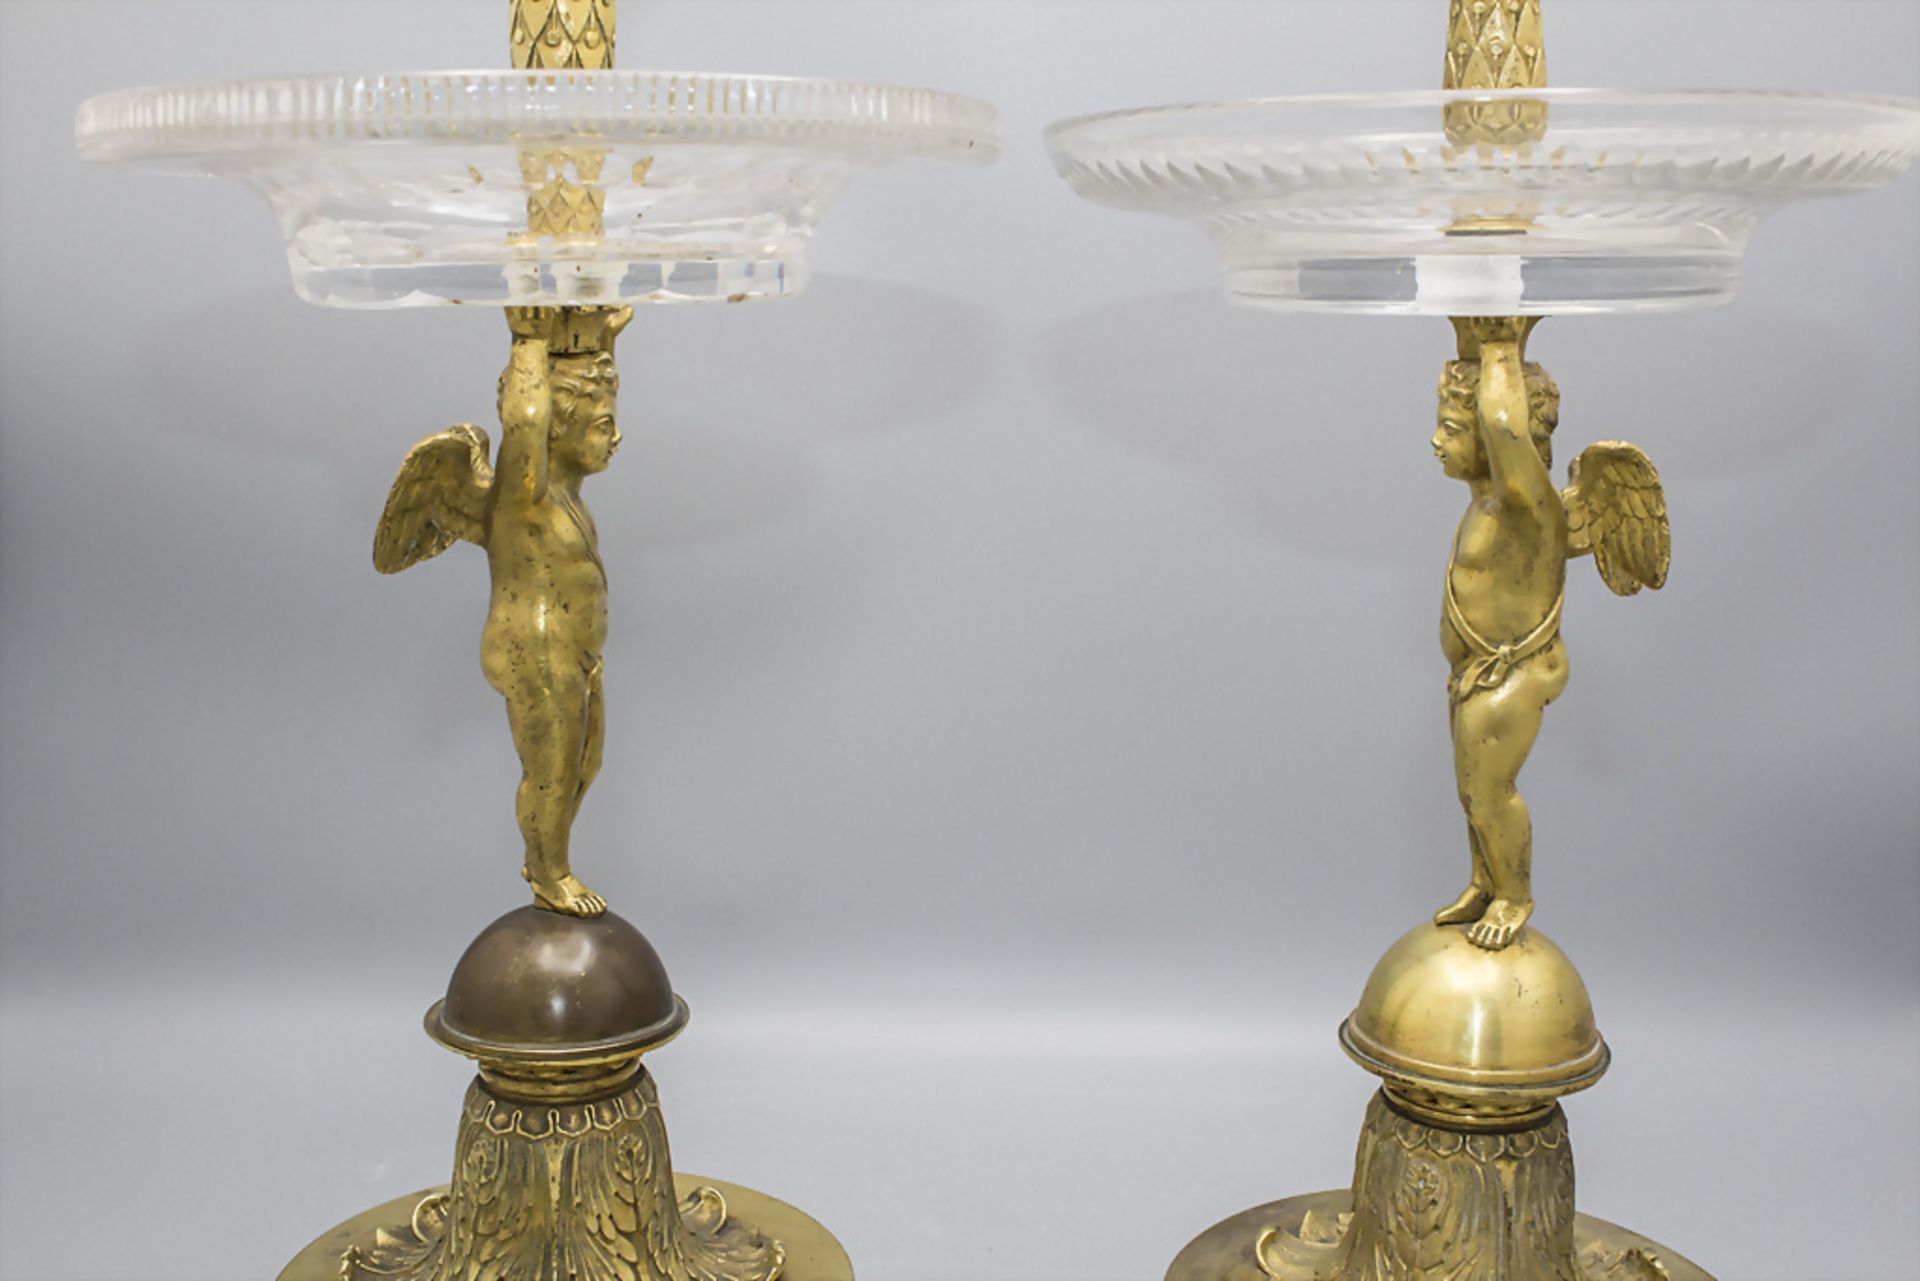 Paar Bronze Tafelaufsätze 'Amorette' / A pair of bronze centerpieces 'Armor', Paris, um 1830 - Image 3 of 7